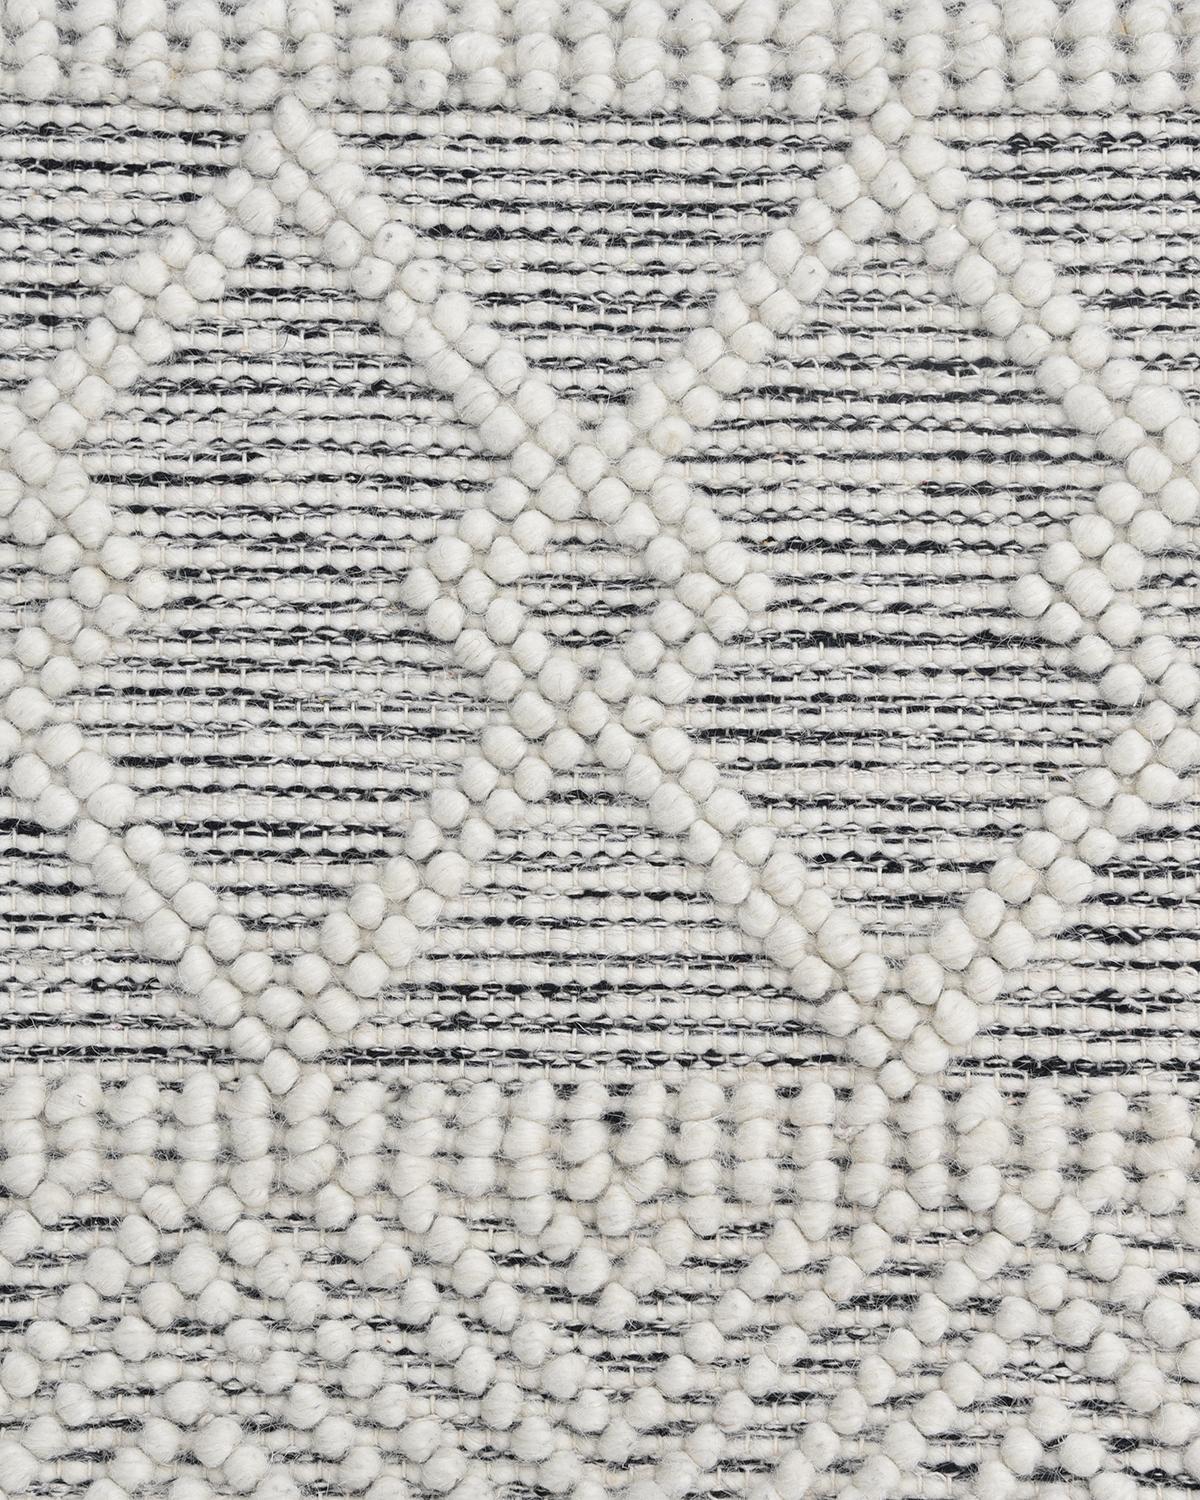 Durables et à faible intensité, les tapis à tissage plat sont particulièrement populaires pour les pièces à haut volume et dans les foyers avec des enfants et des animaux de compagnie. Les tapis tissés à la main de la collection Flatweave sont à la